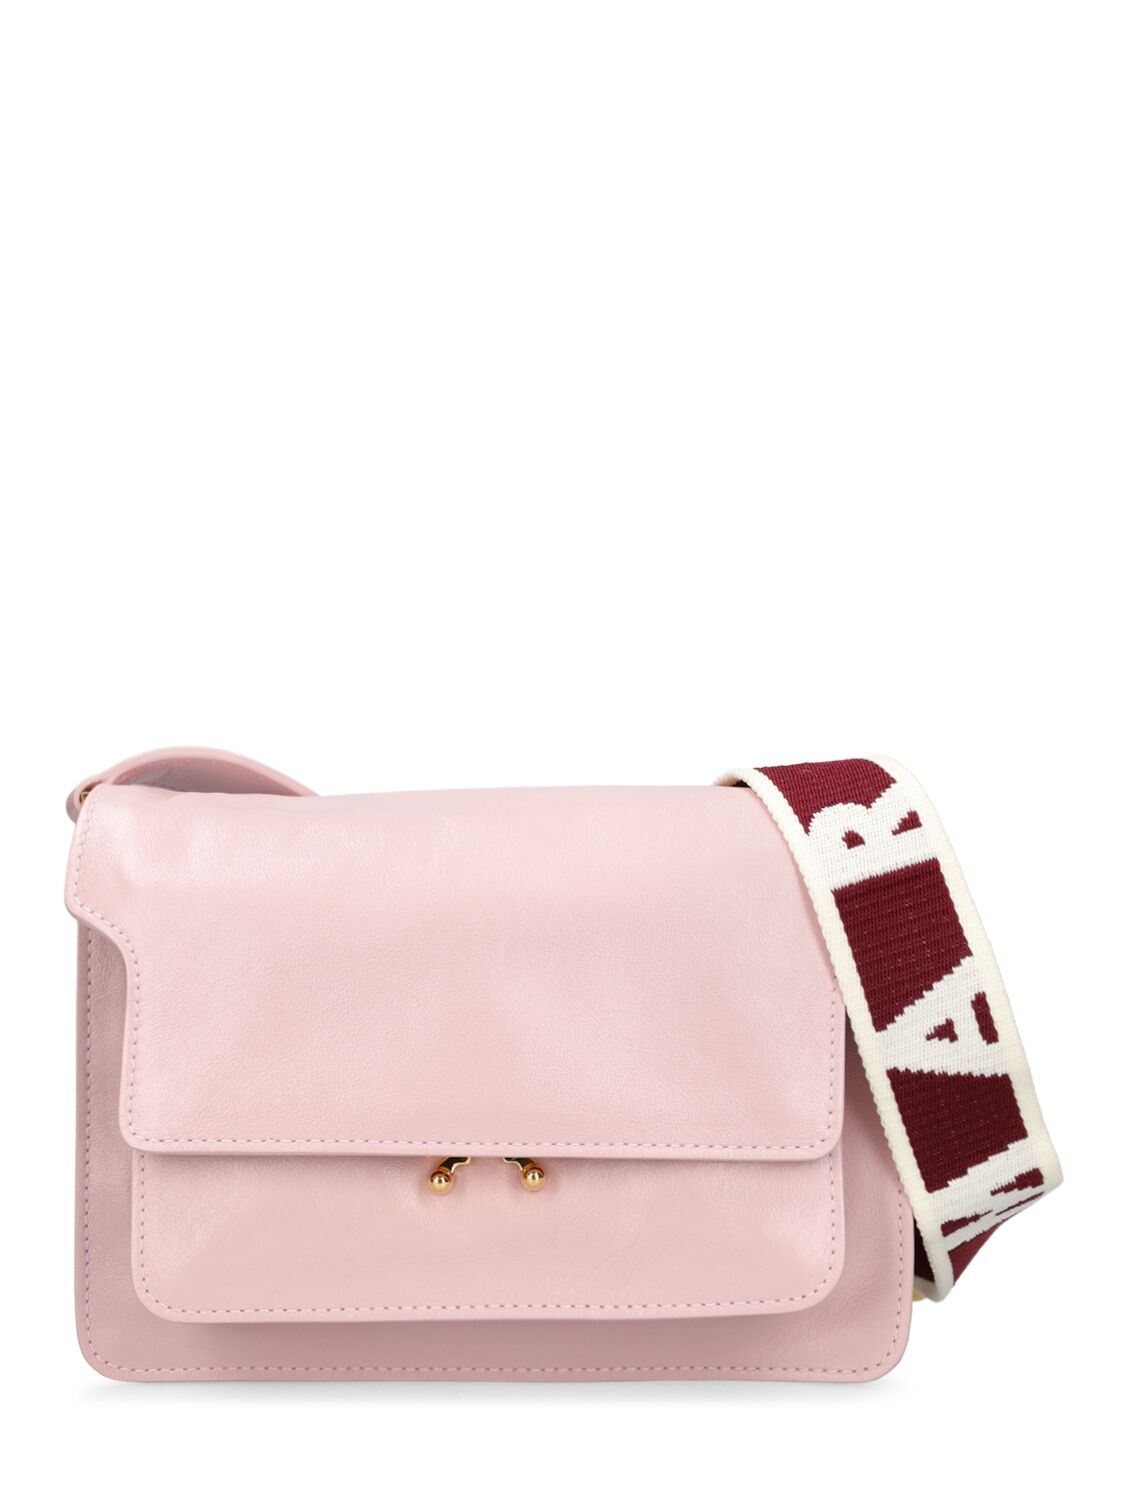 Marni Trunk Medium Leather Shoulder Bag In Light Pink